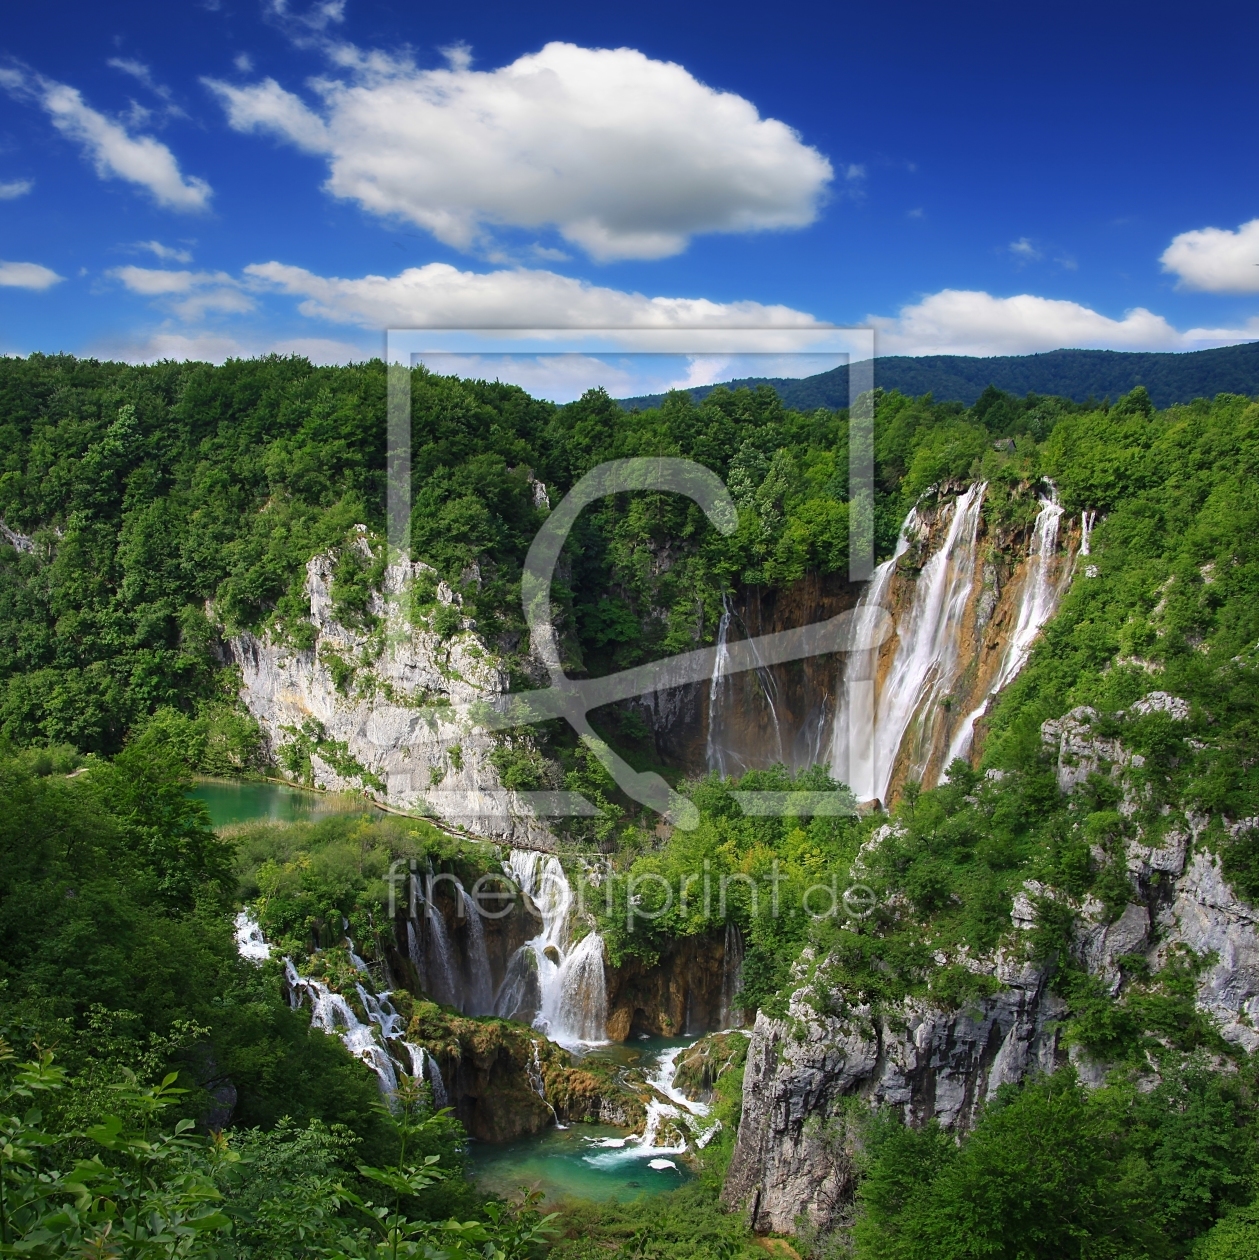 Bild-Nr.: 11523121 Veliki slap Wasserfall Nationalpark Plitvicer Seen erstellt von Renate Knapp